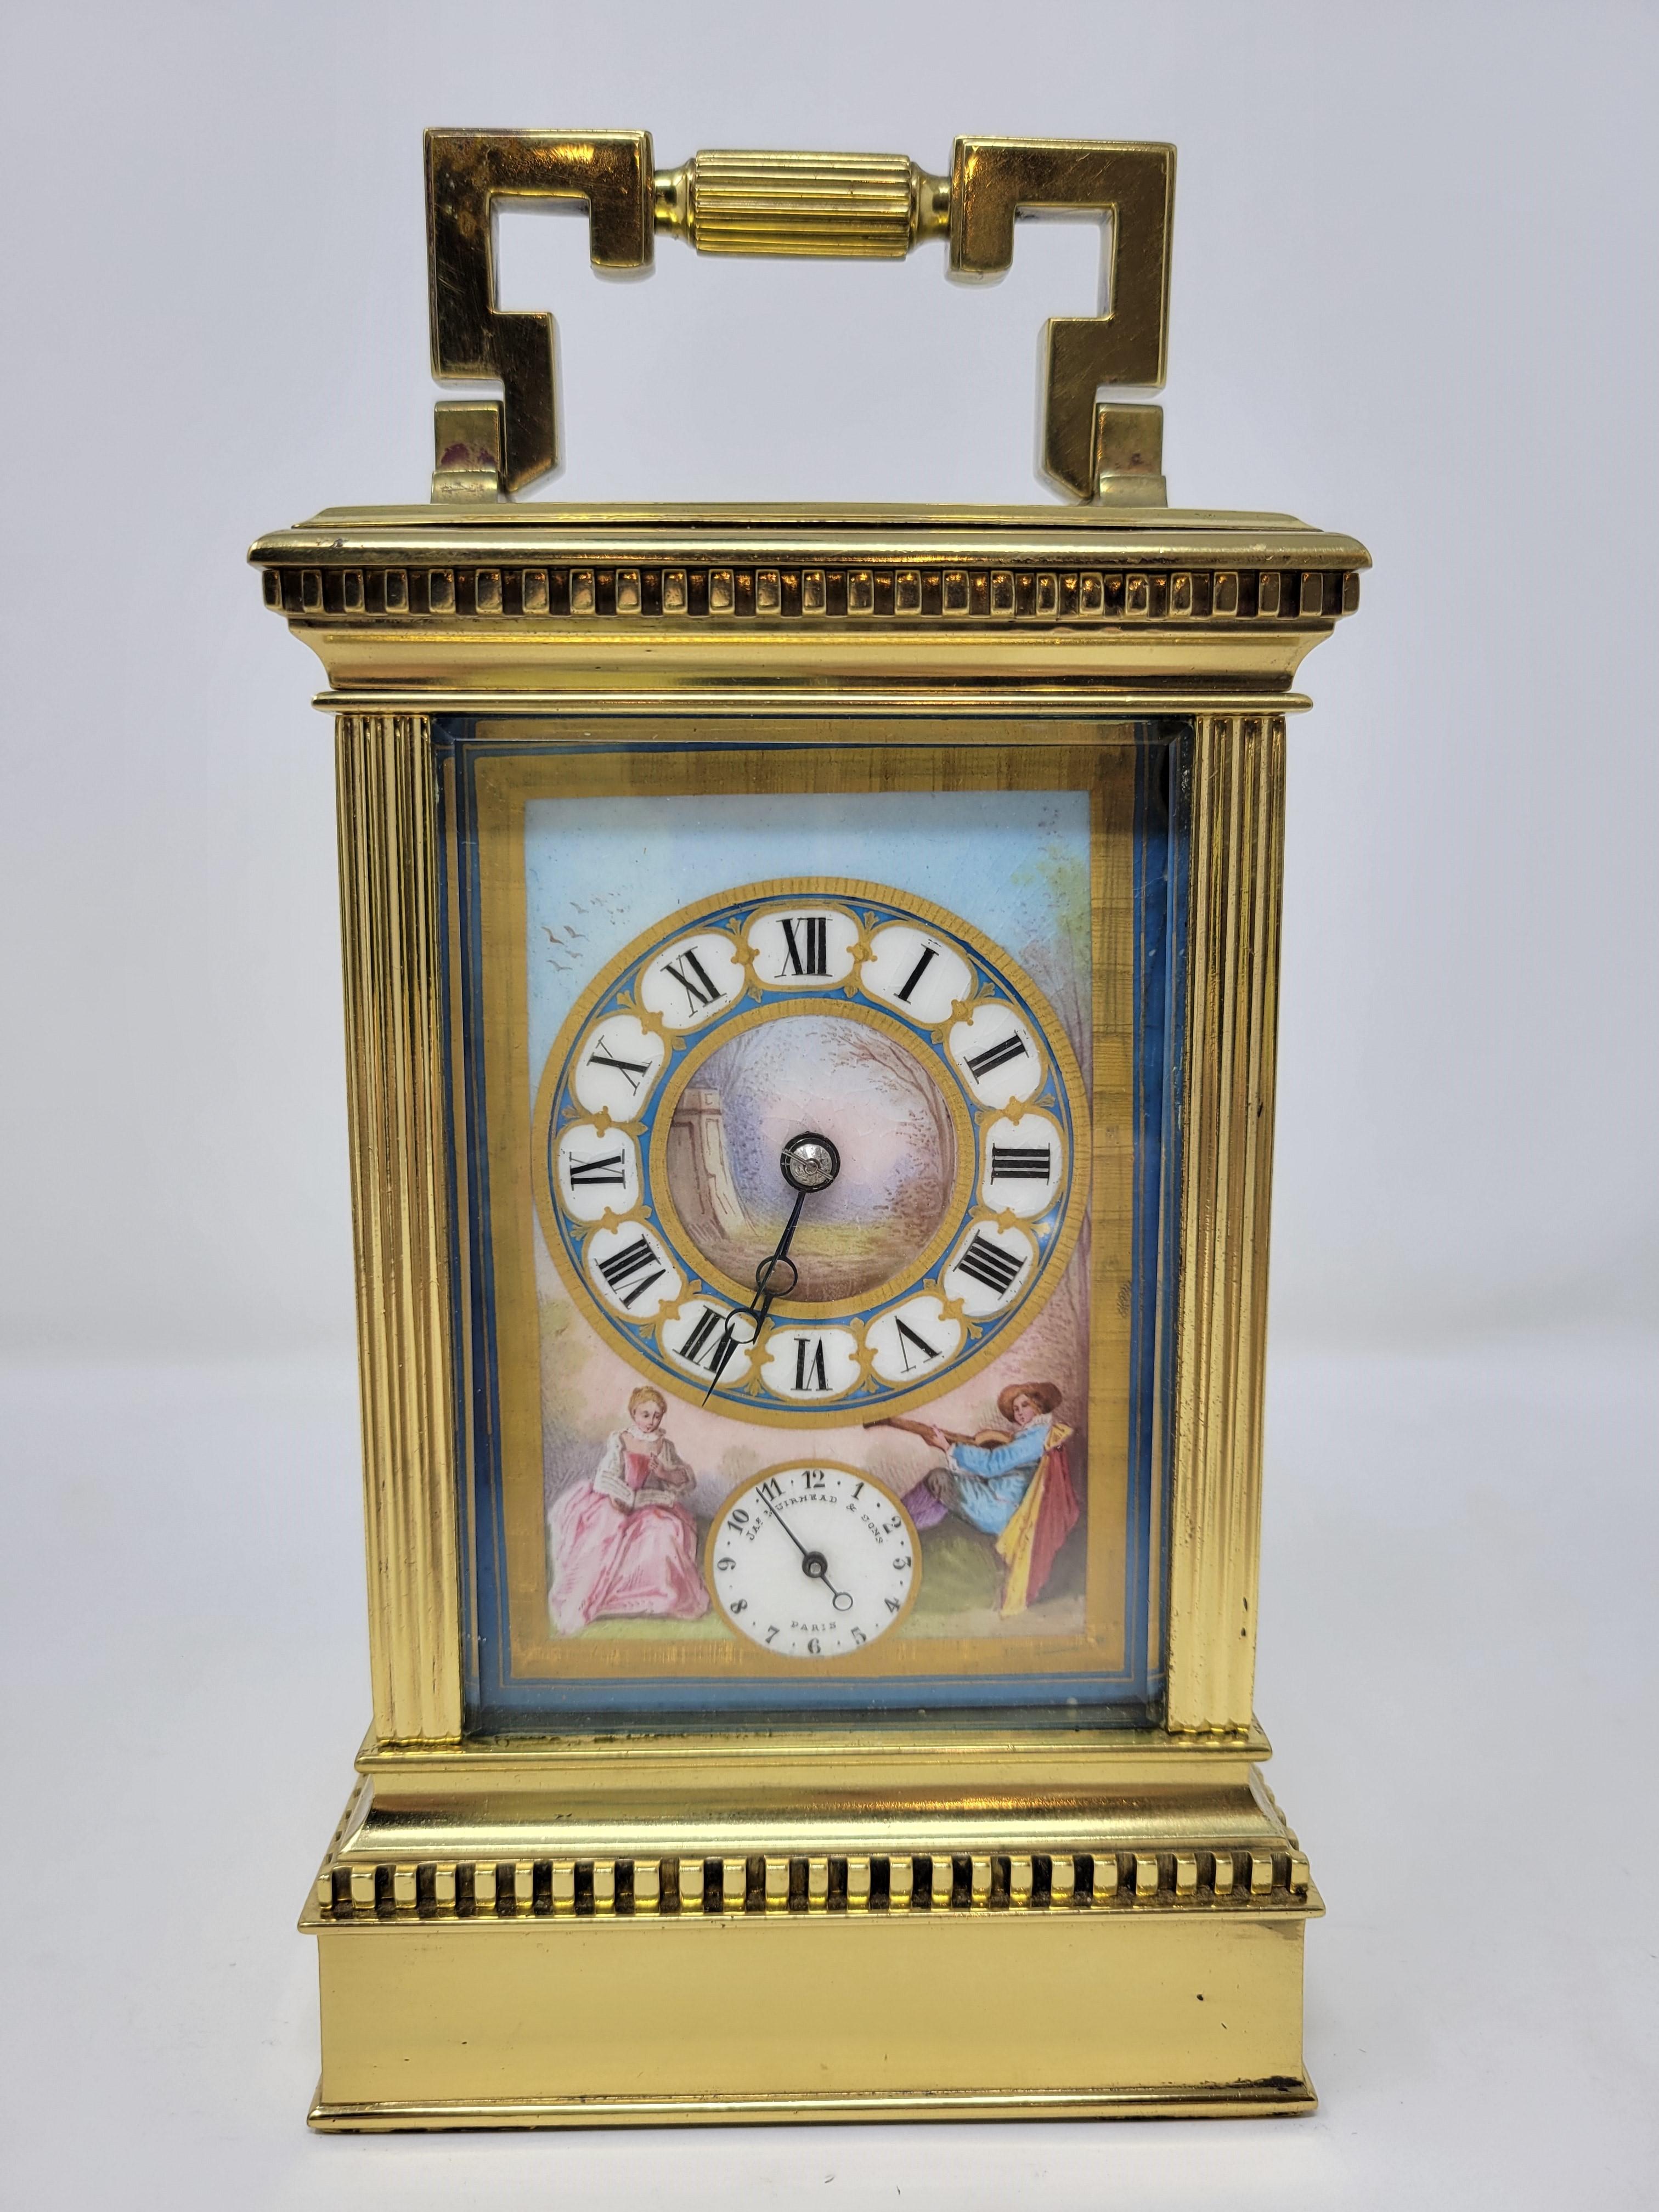 Il s'agit d'une merveilleuse petite horloge à carrosse qui sonne et possède une alarme. 
Il a été fabriqué par James Muirhead à Paris, vers 1880.